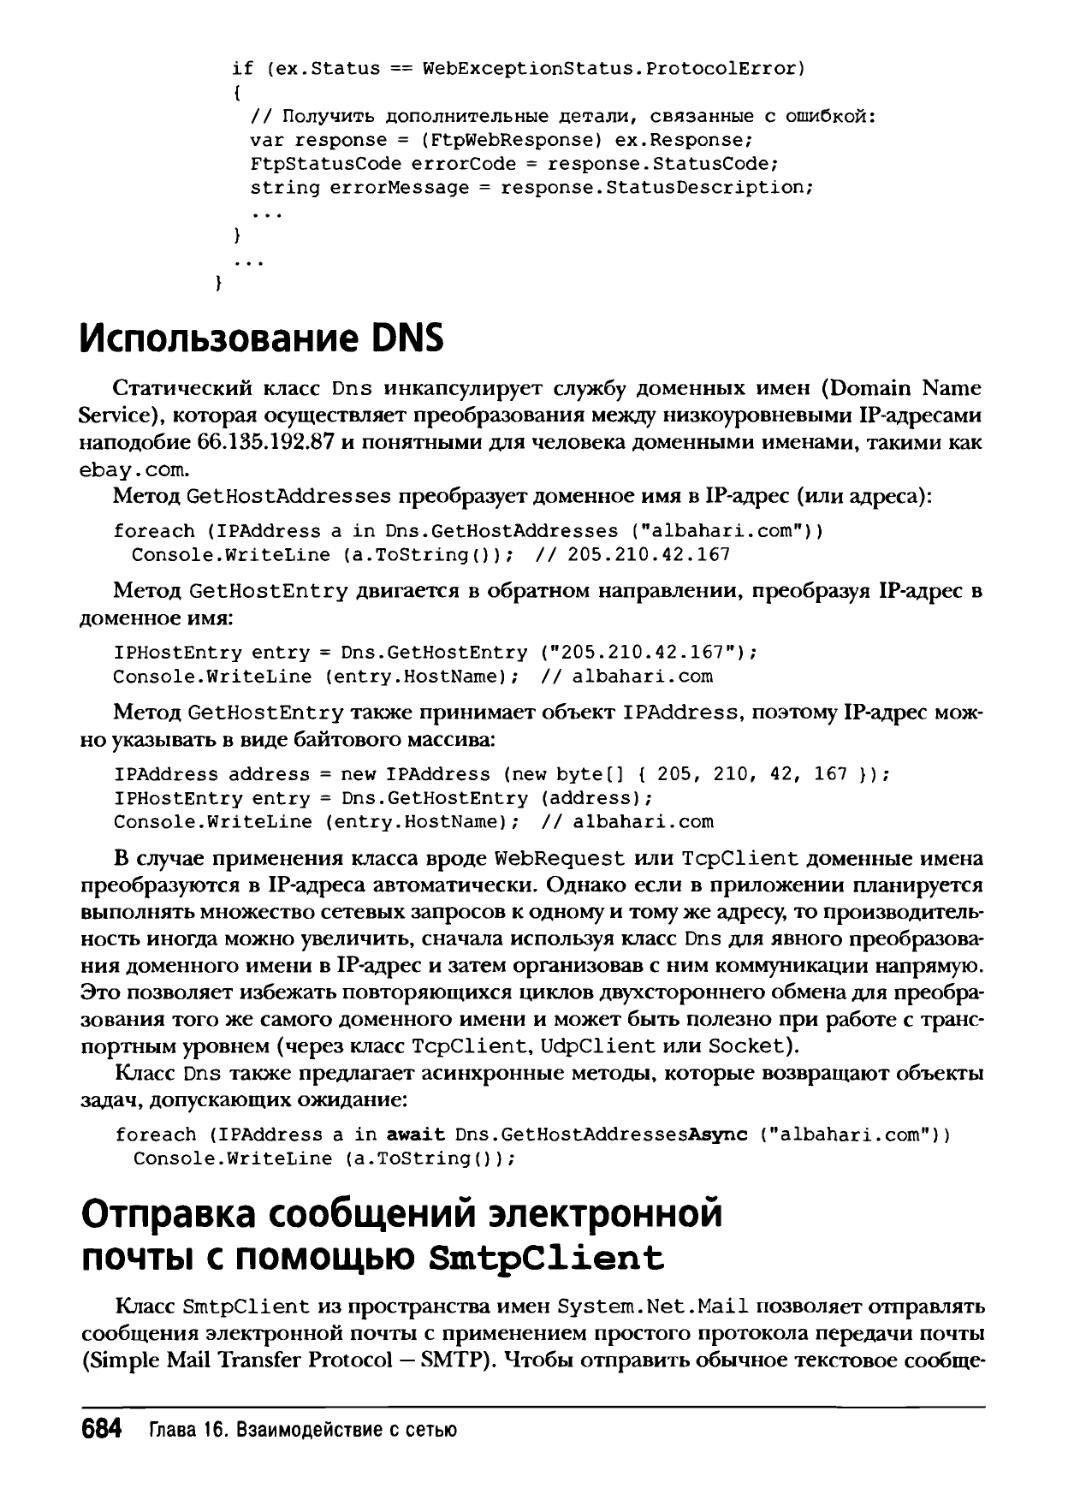 Использование DNS
Отправка сообщений электронной почты с помощью SmtpClient